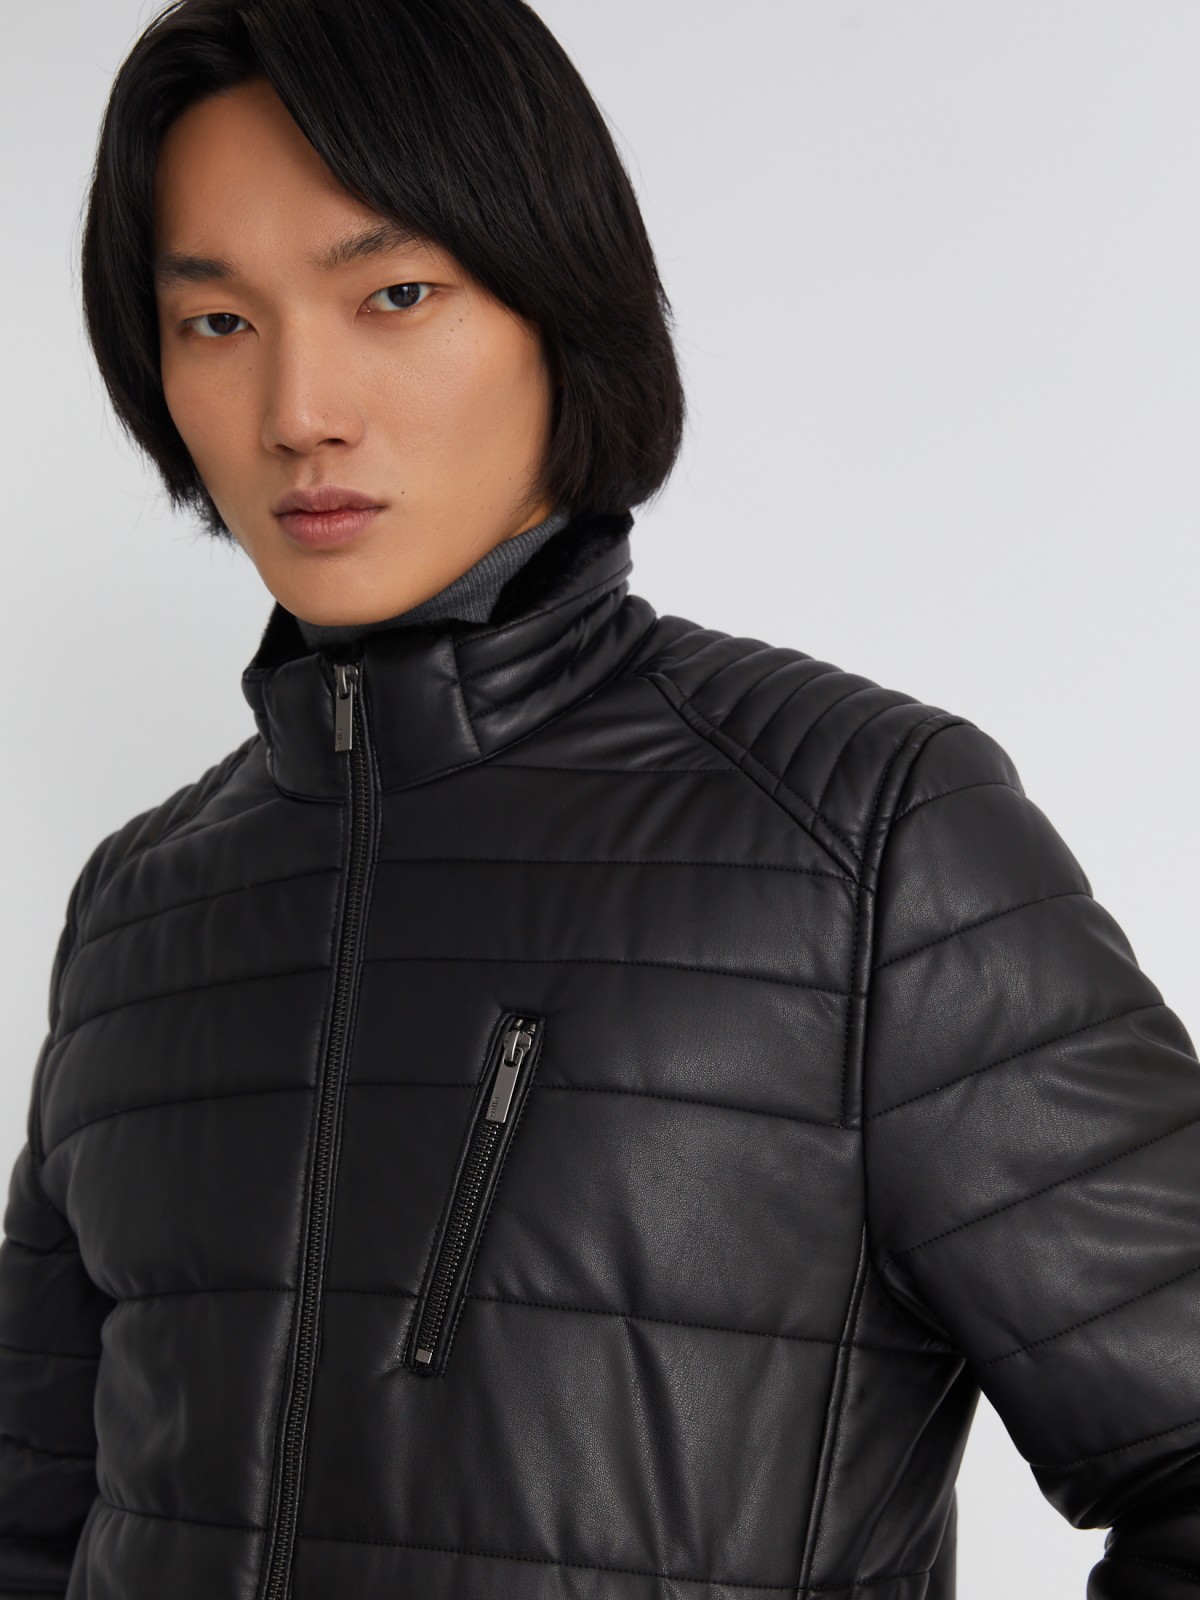 Тёплая стёганая куртка из экокожи на синтепоне с воротником-стойкой zolla 013345150014, цвет черный, размер S - фото 4